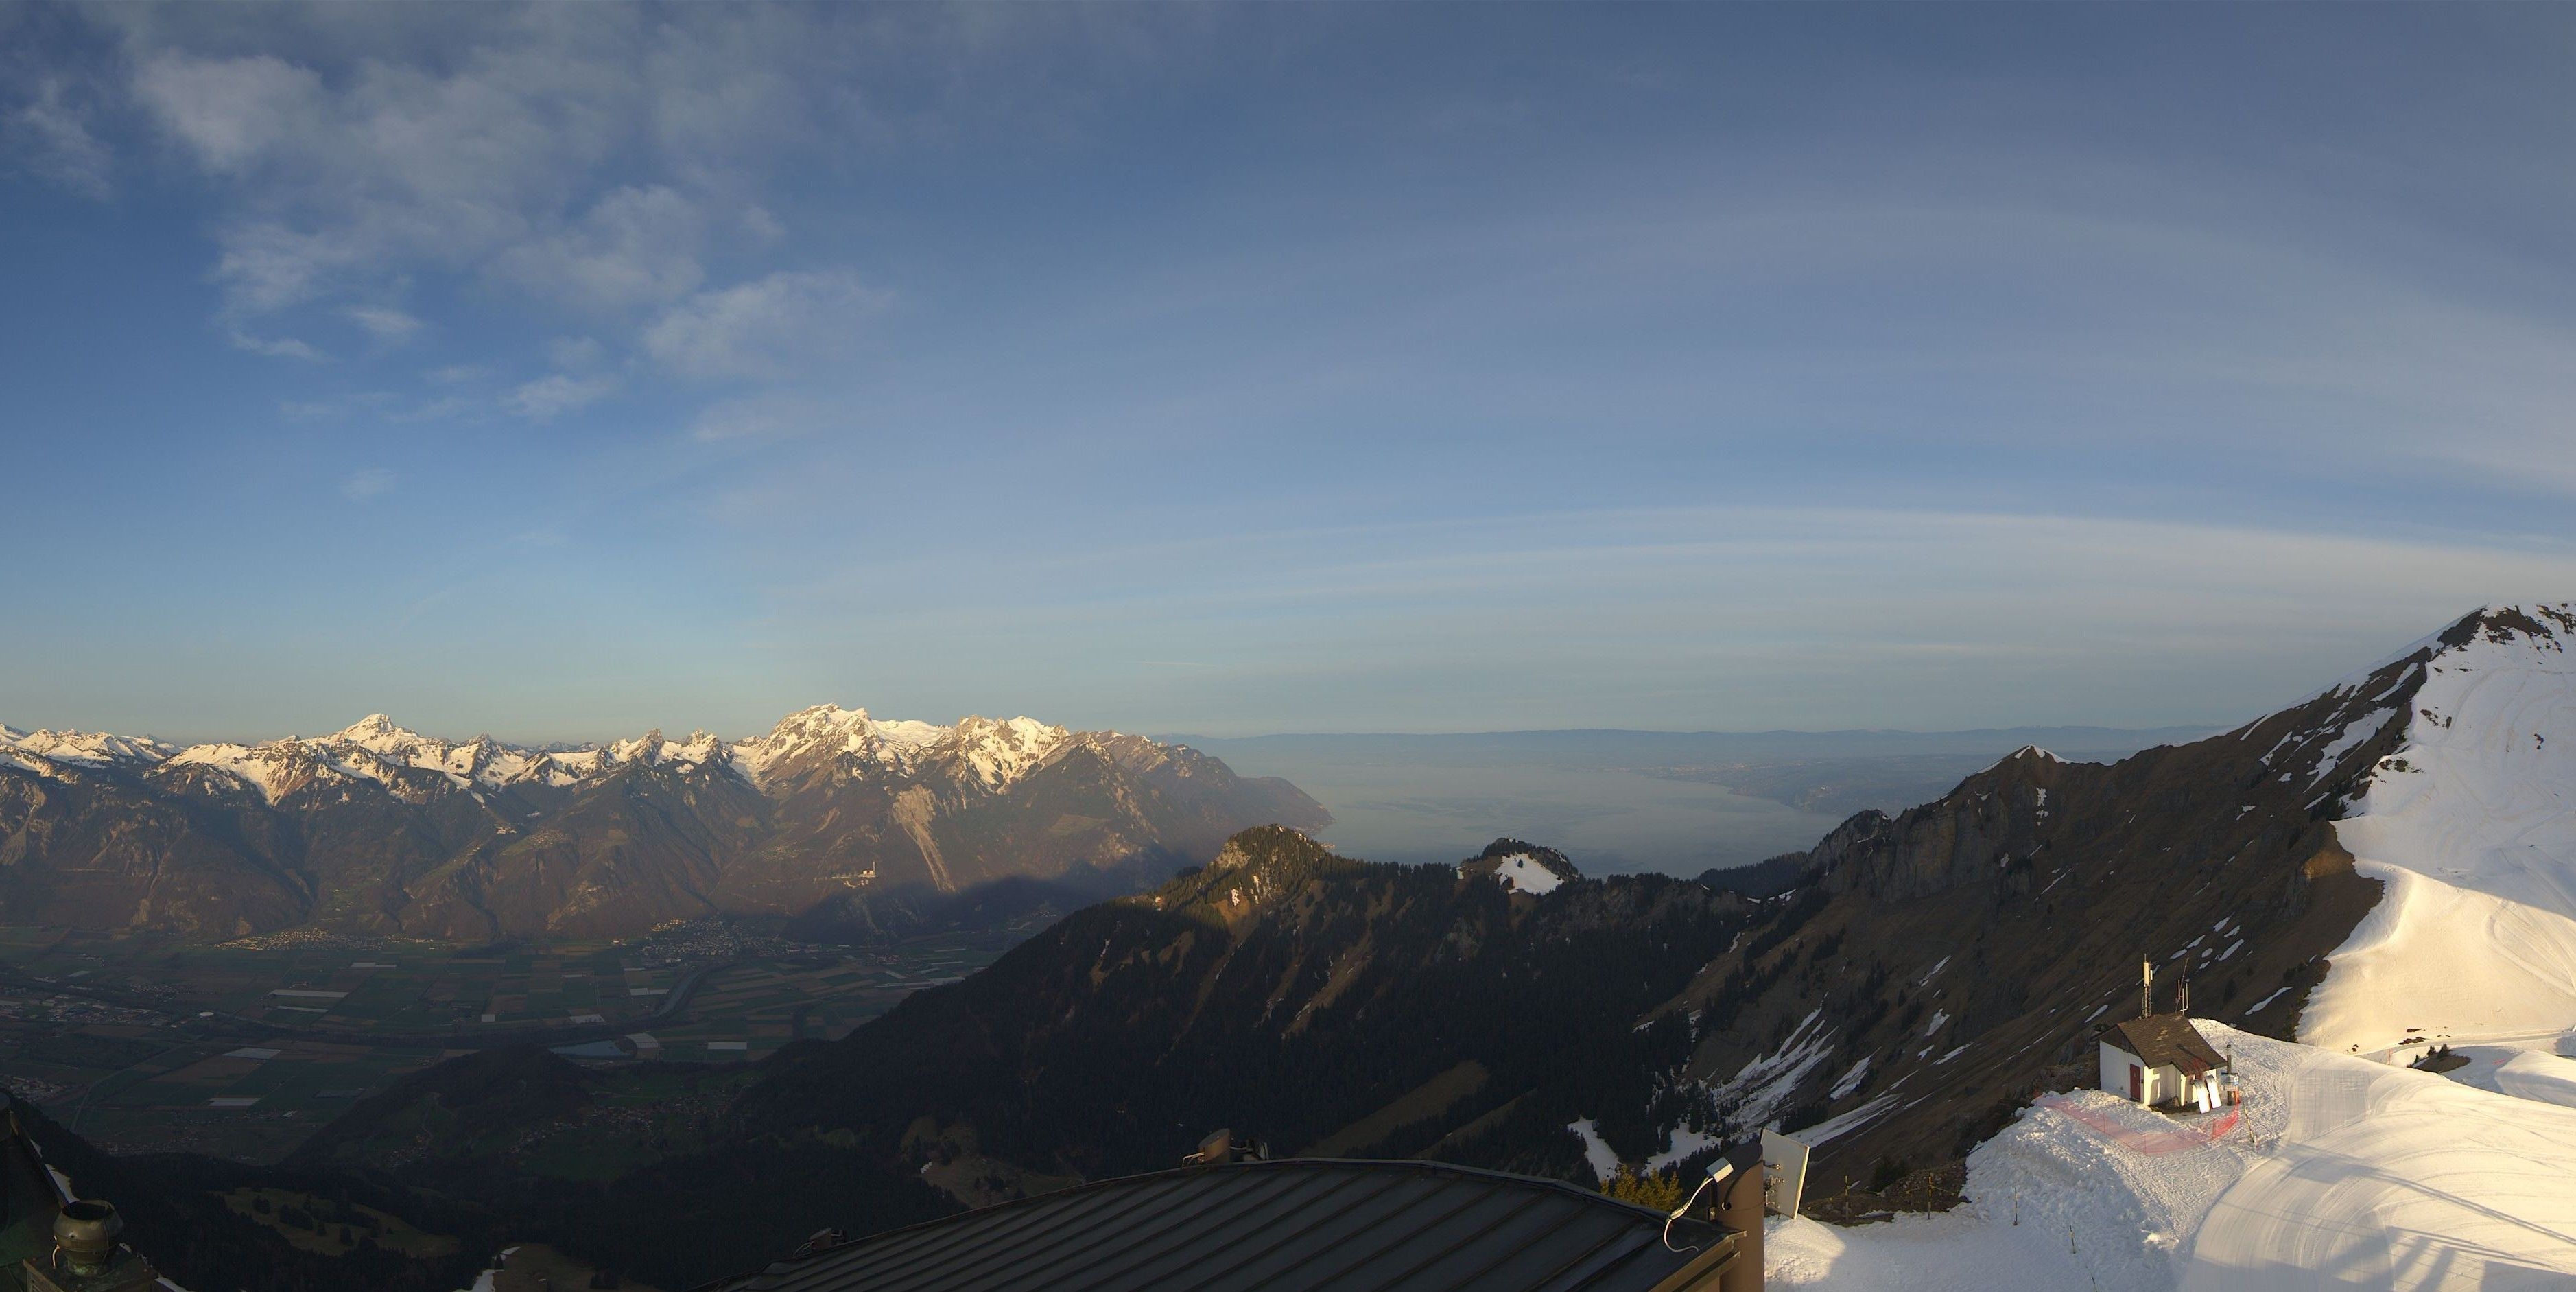 Ook in het Zwitserse Leysin start de dag zonnig, maar in de verte nadert er al wat bewolking (roundshot.com)